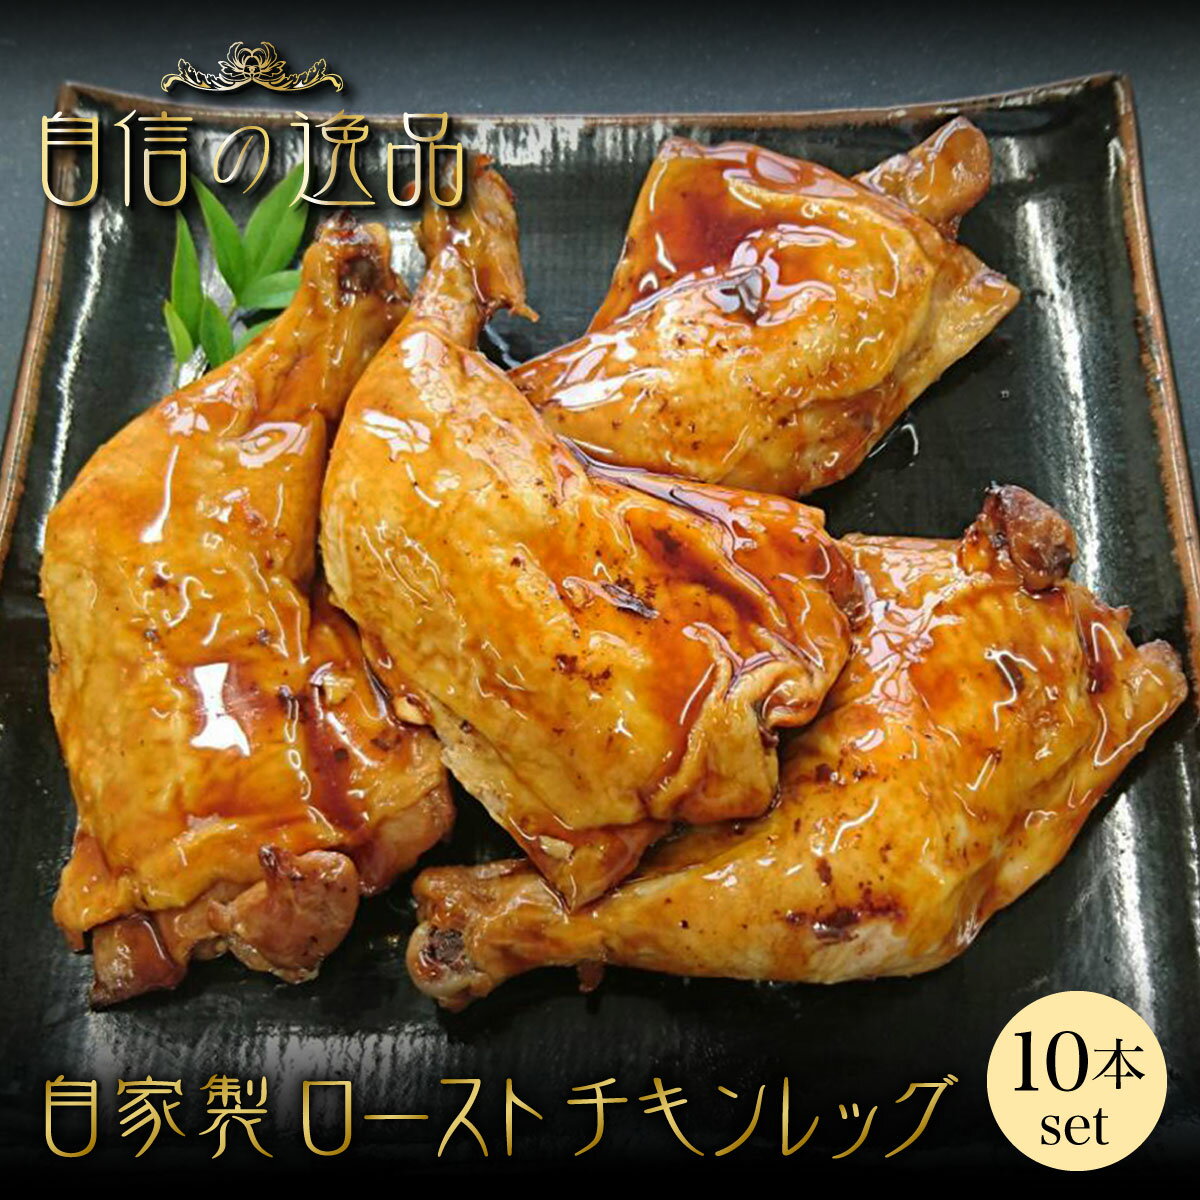 【冷凍】鶏肉 ローストチキン 10本 